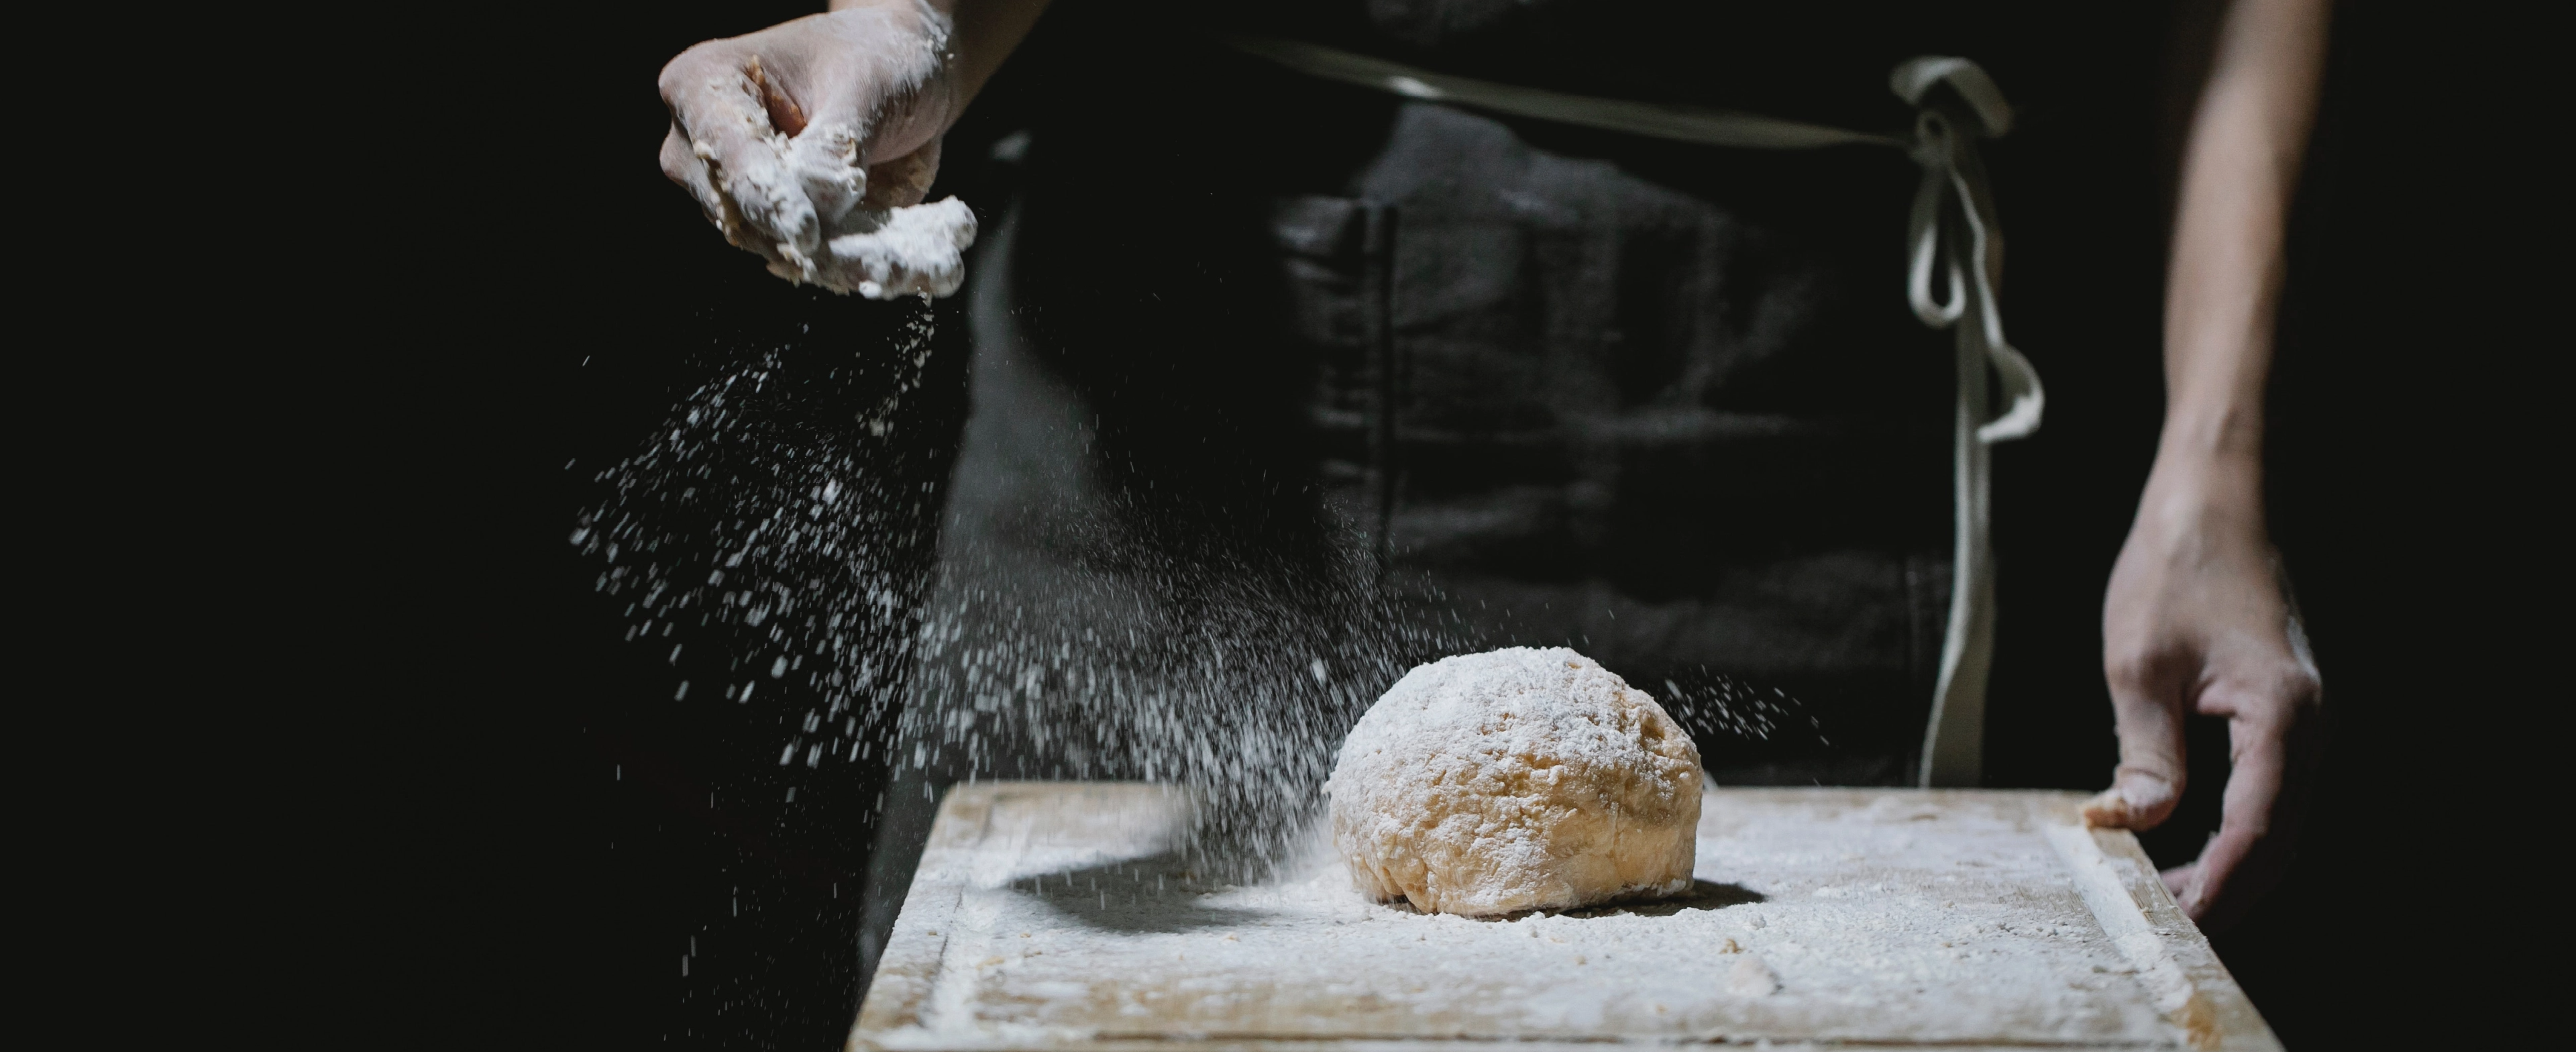 Comprar maquinaria y productos de Panadería y Pastelería en Logroño en Sandor. Automatización de procesos en industria alimentaria